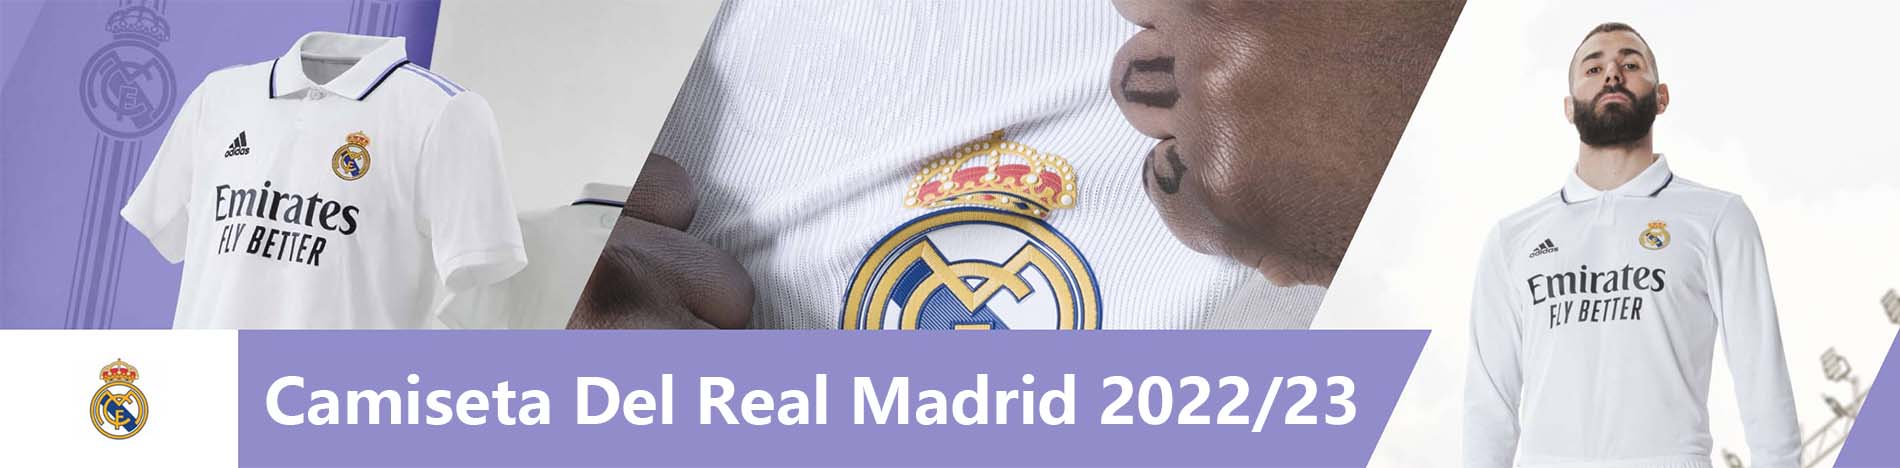 Camisetas Real Madrid 2022 2023